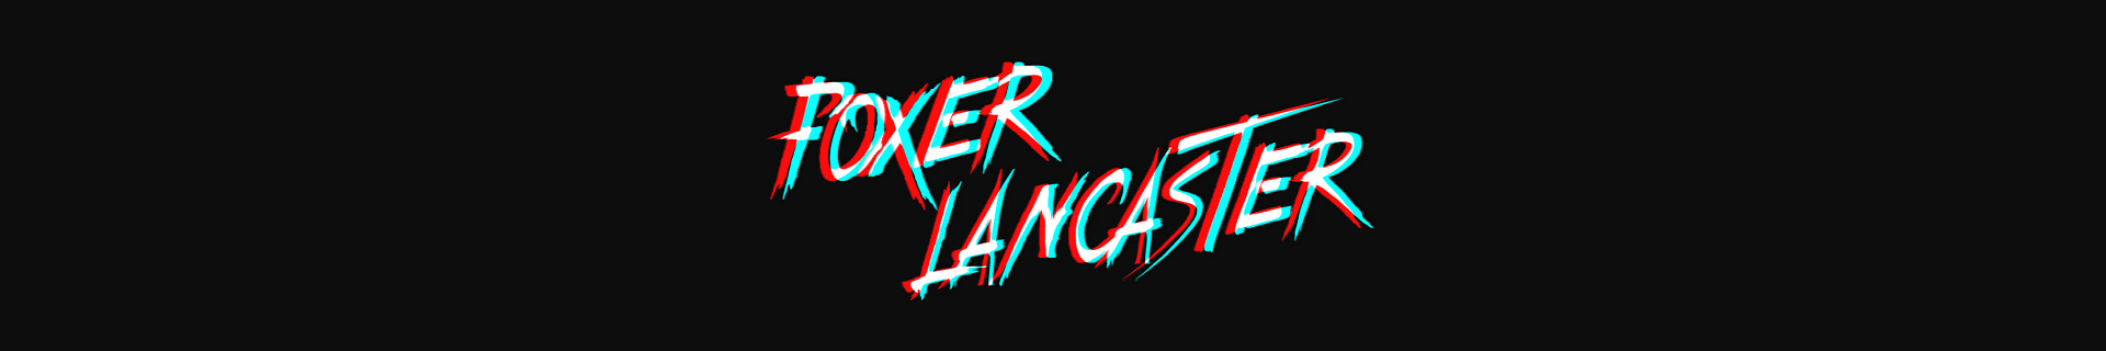 Foxer Lancaster